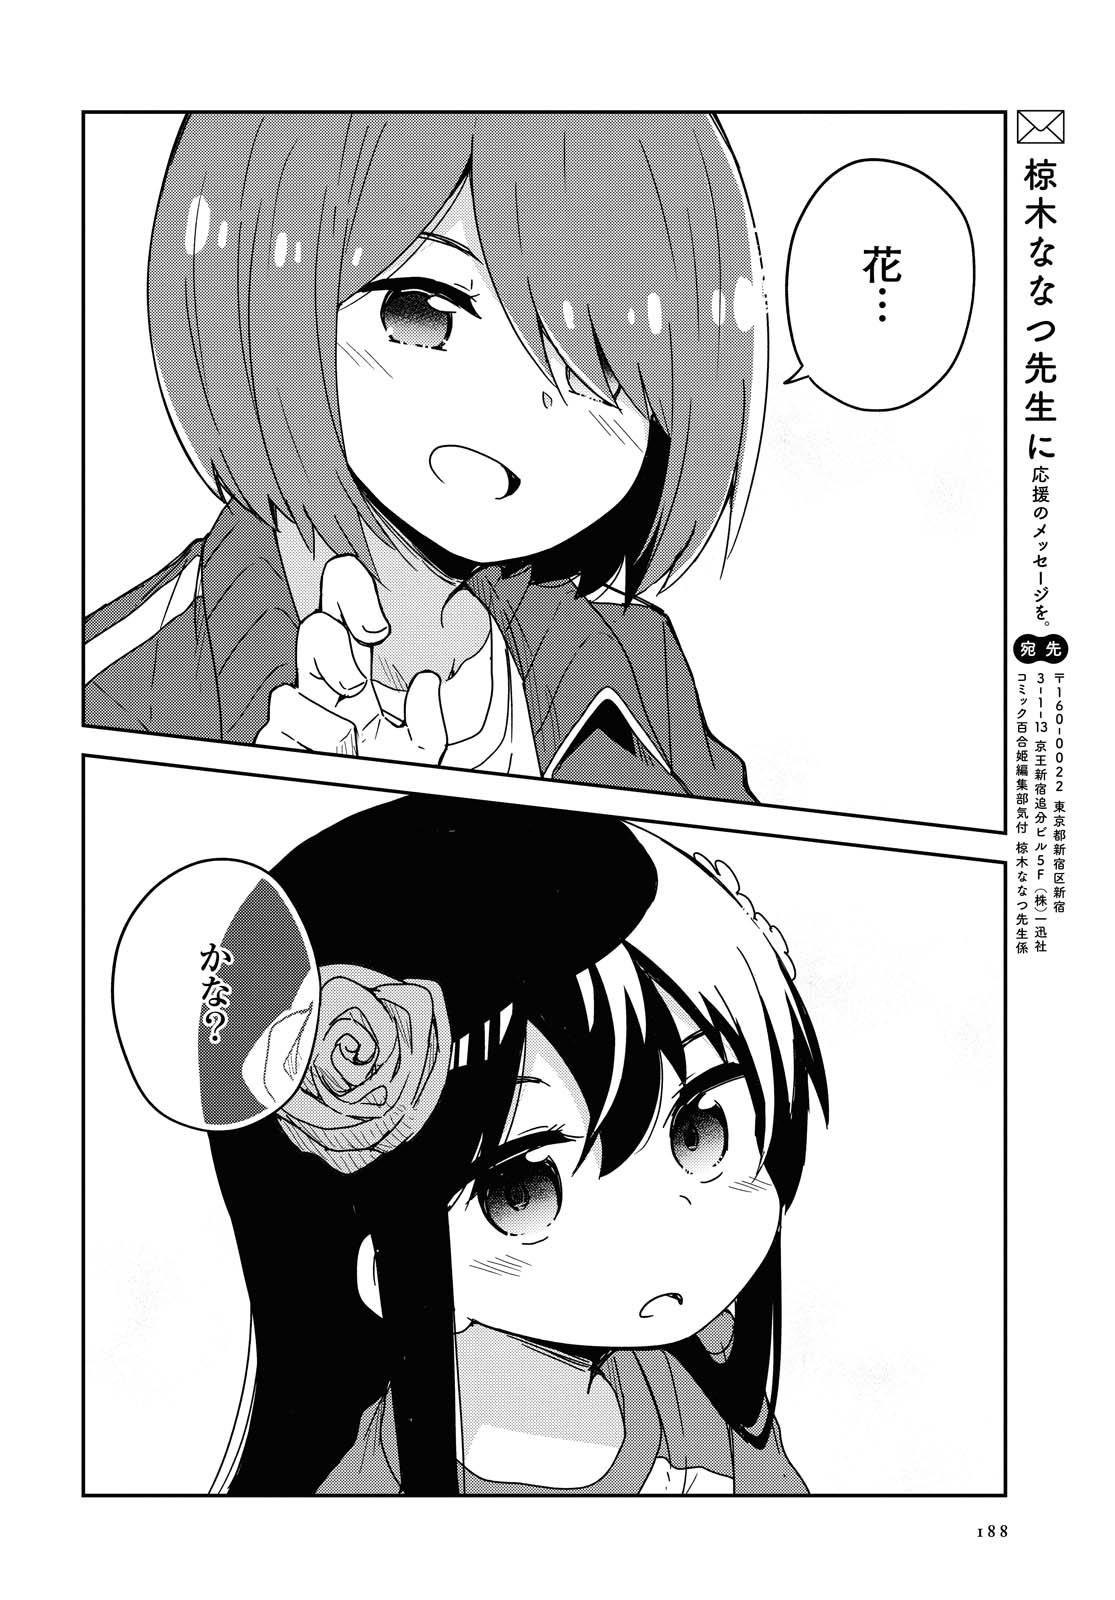 Watashi ni Tenshi ga Maiorita! - Chapter 68 - Page 18